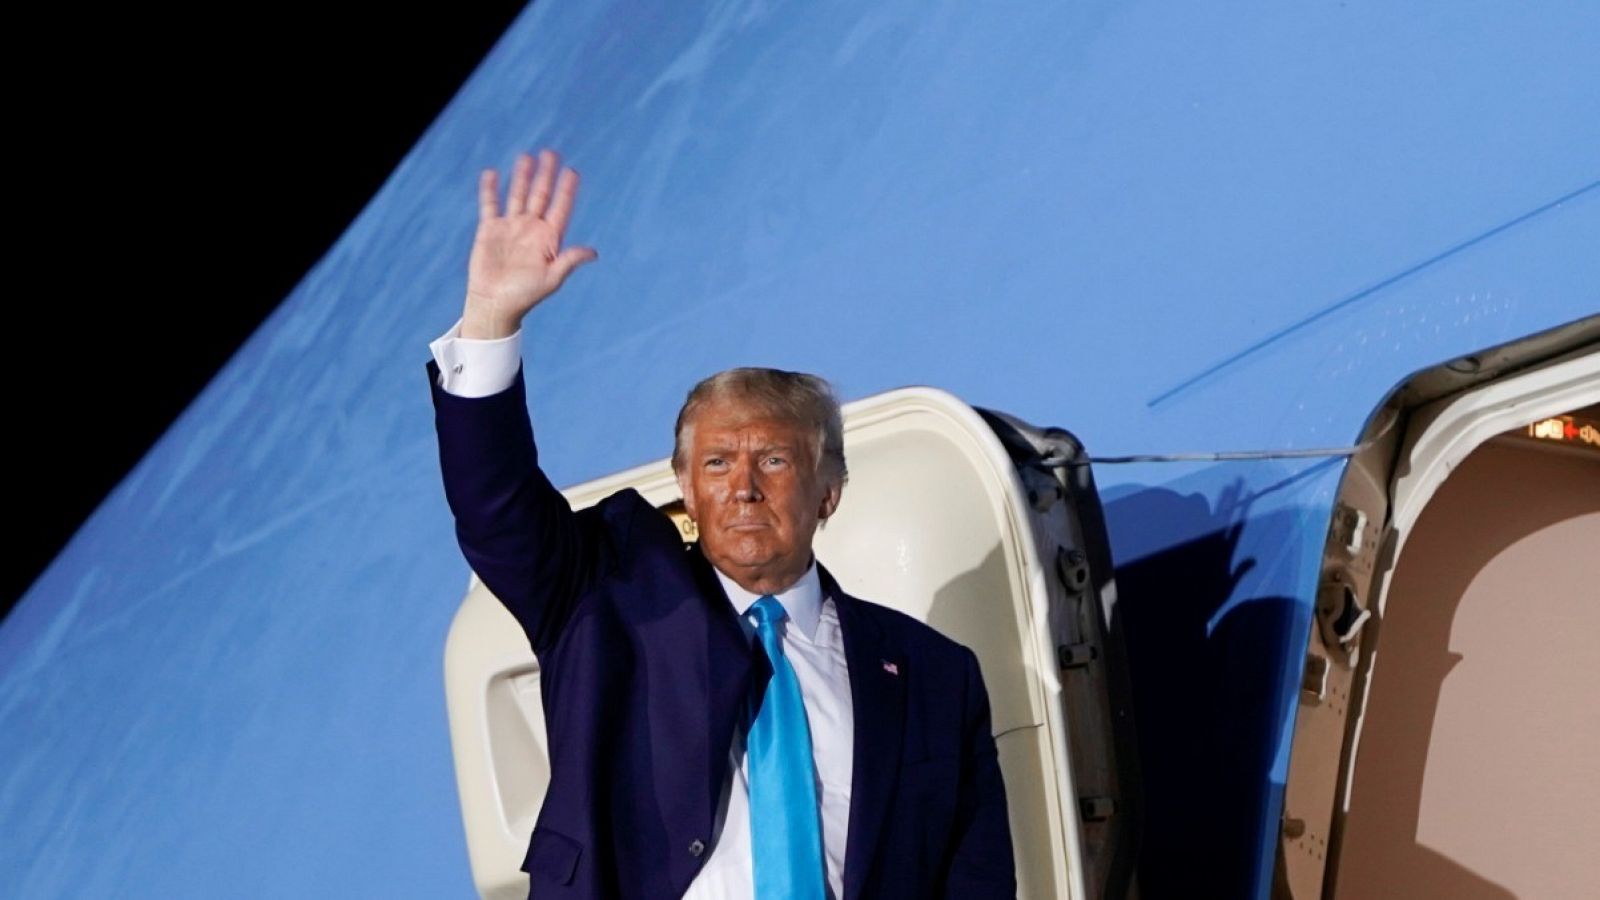 El presidente de Estados Unidos, Donald Trump, saluda desde la escalerilla del avión en el aeropuerto de Middletown, Pennsylvania.